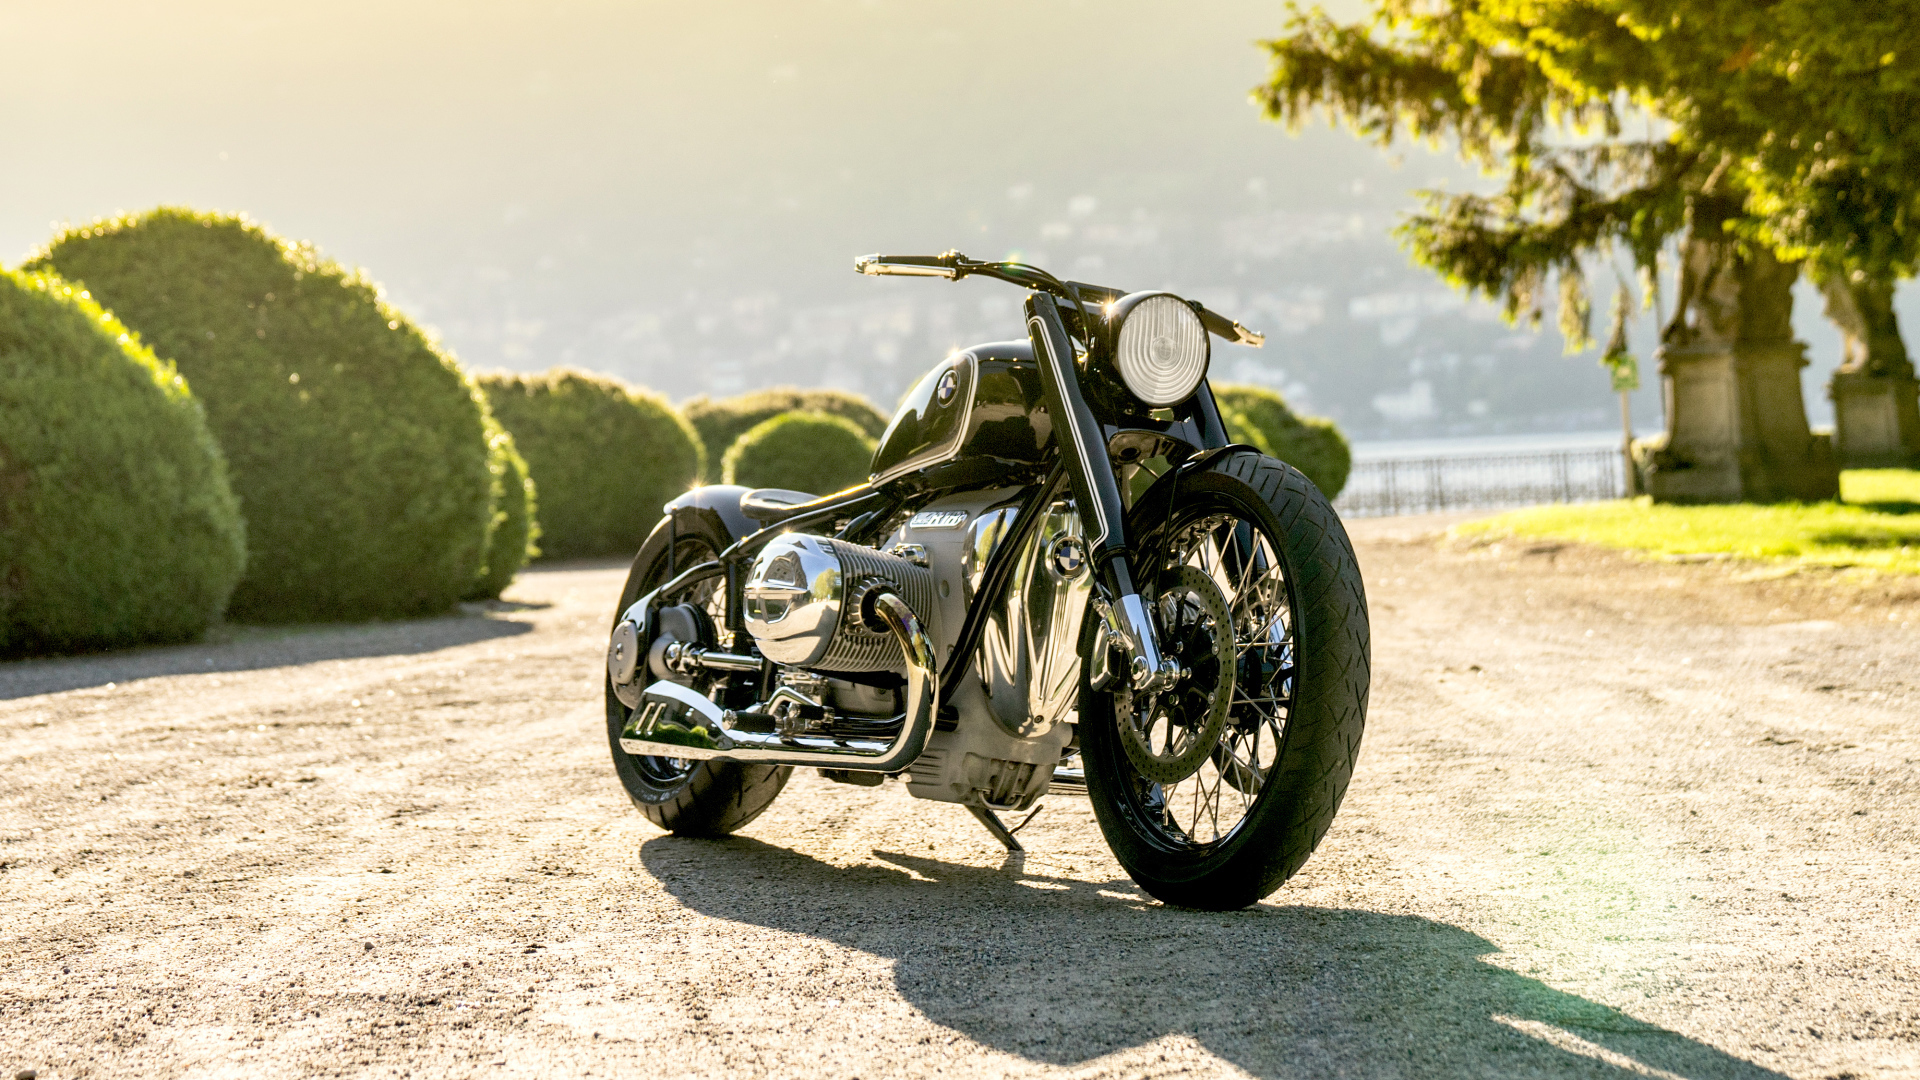 Heavy motorcycle BMW Motorrad Concept R18, 2019